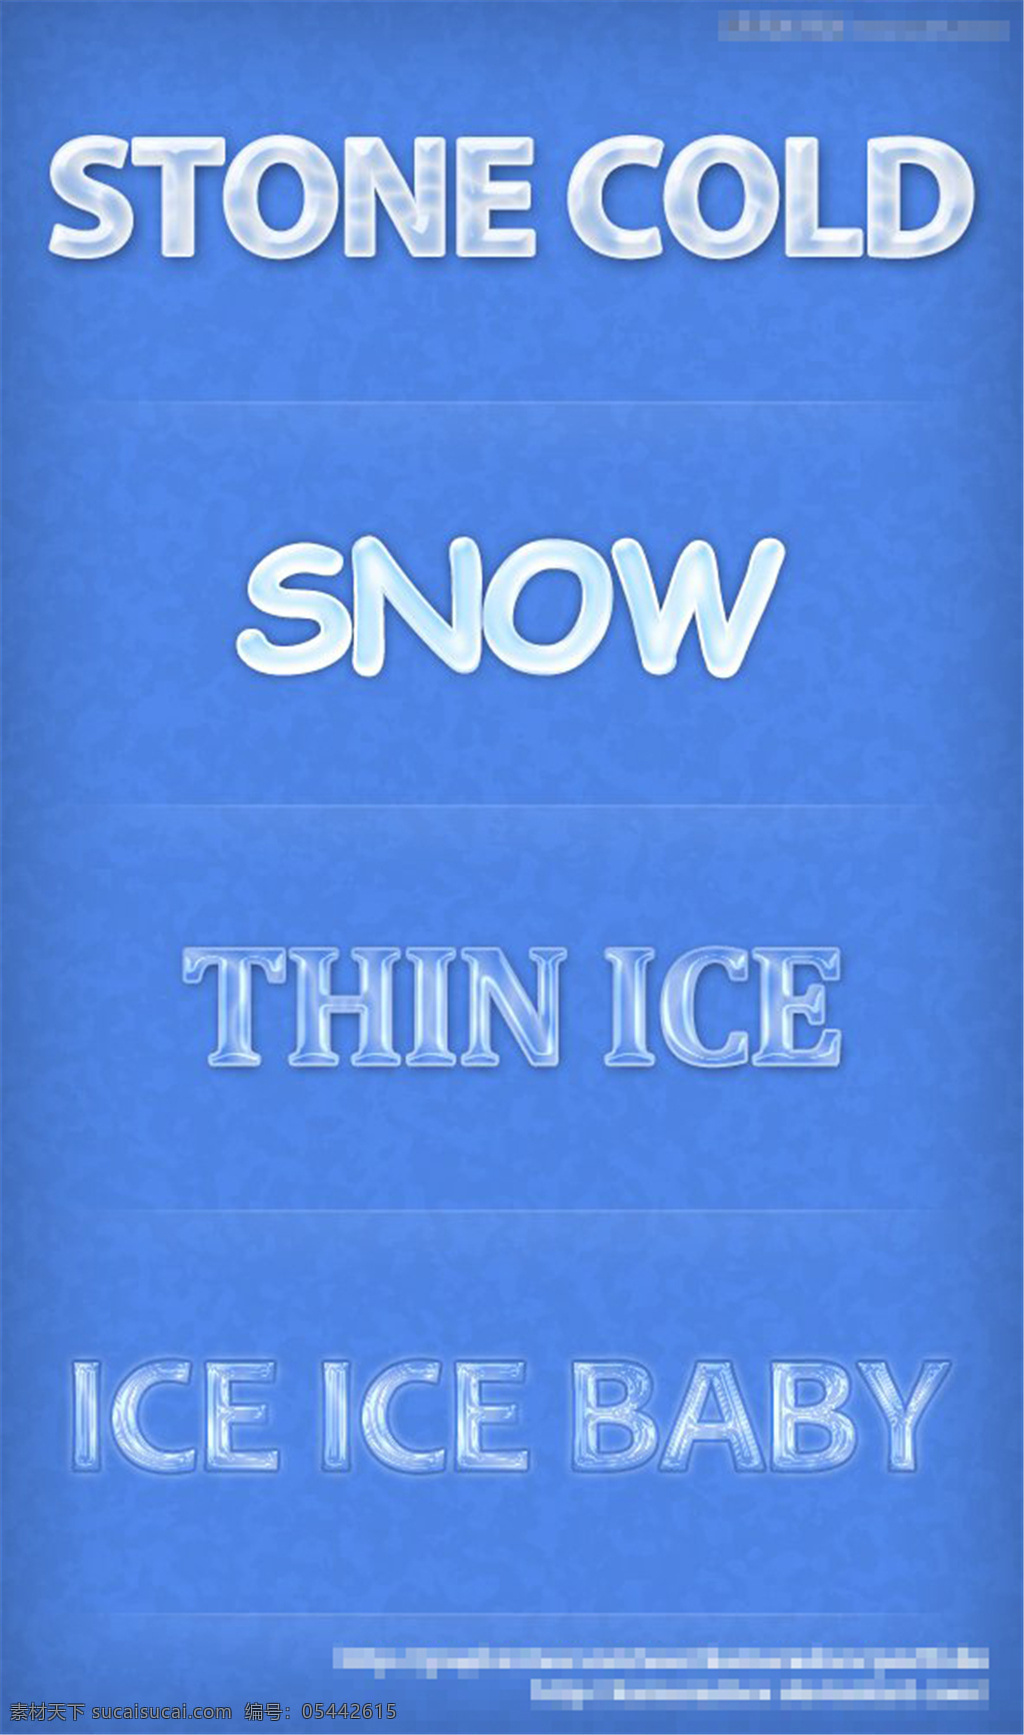 冬季 冰冻 效果 艺术 字 样式 艺术字样式 艺术字 冰冻效果 字体 字体设计